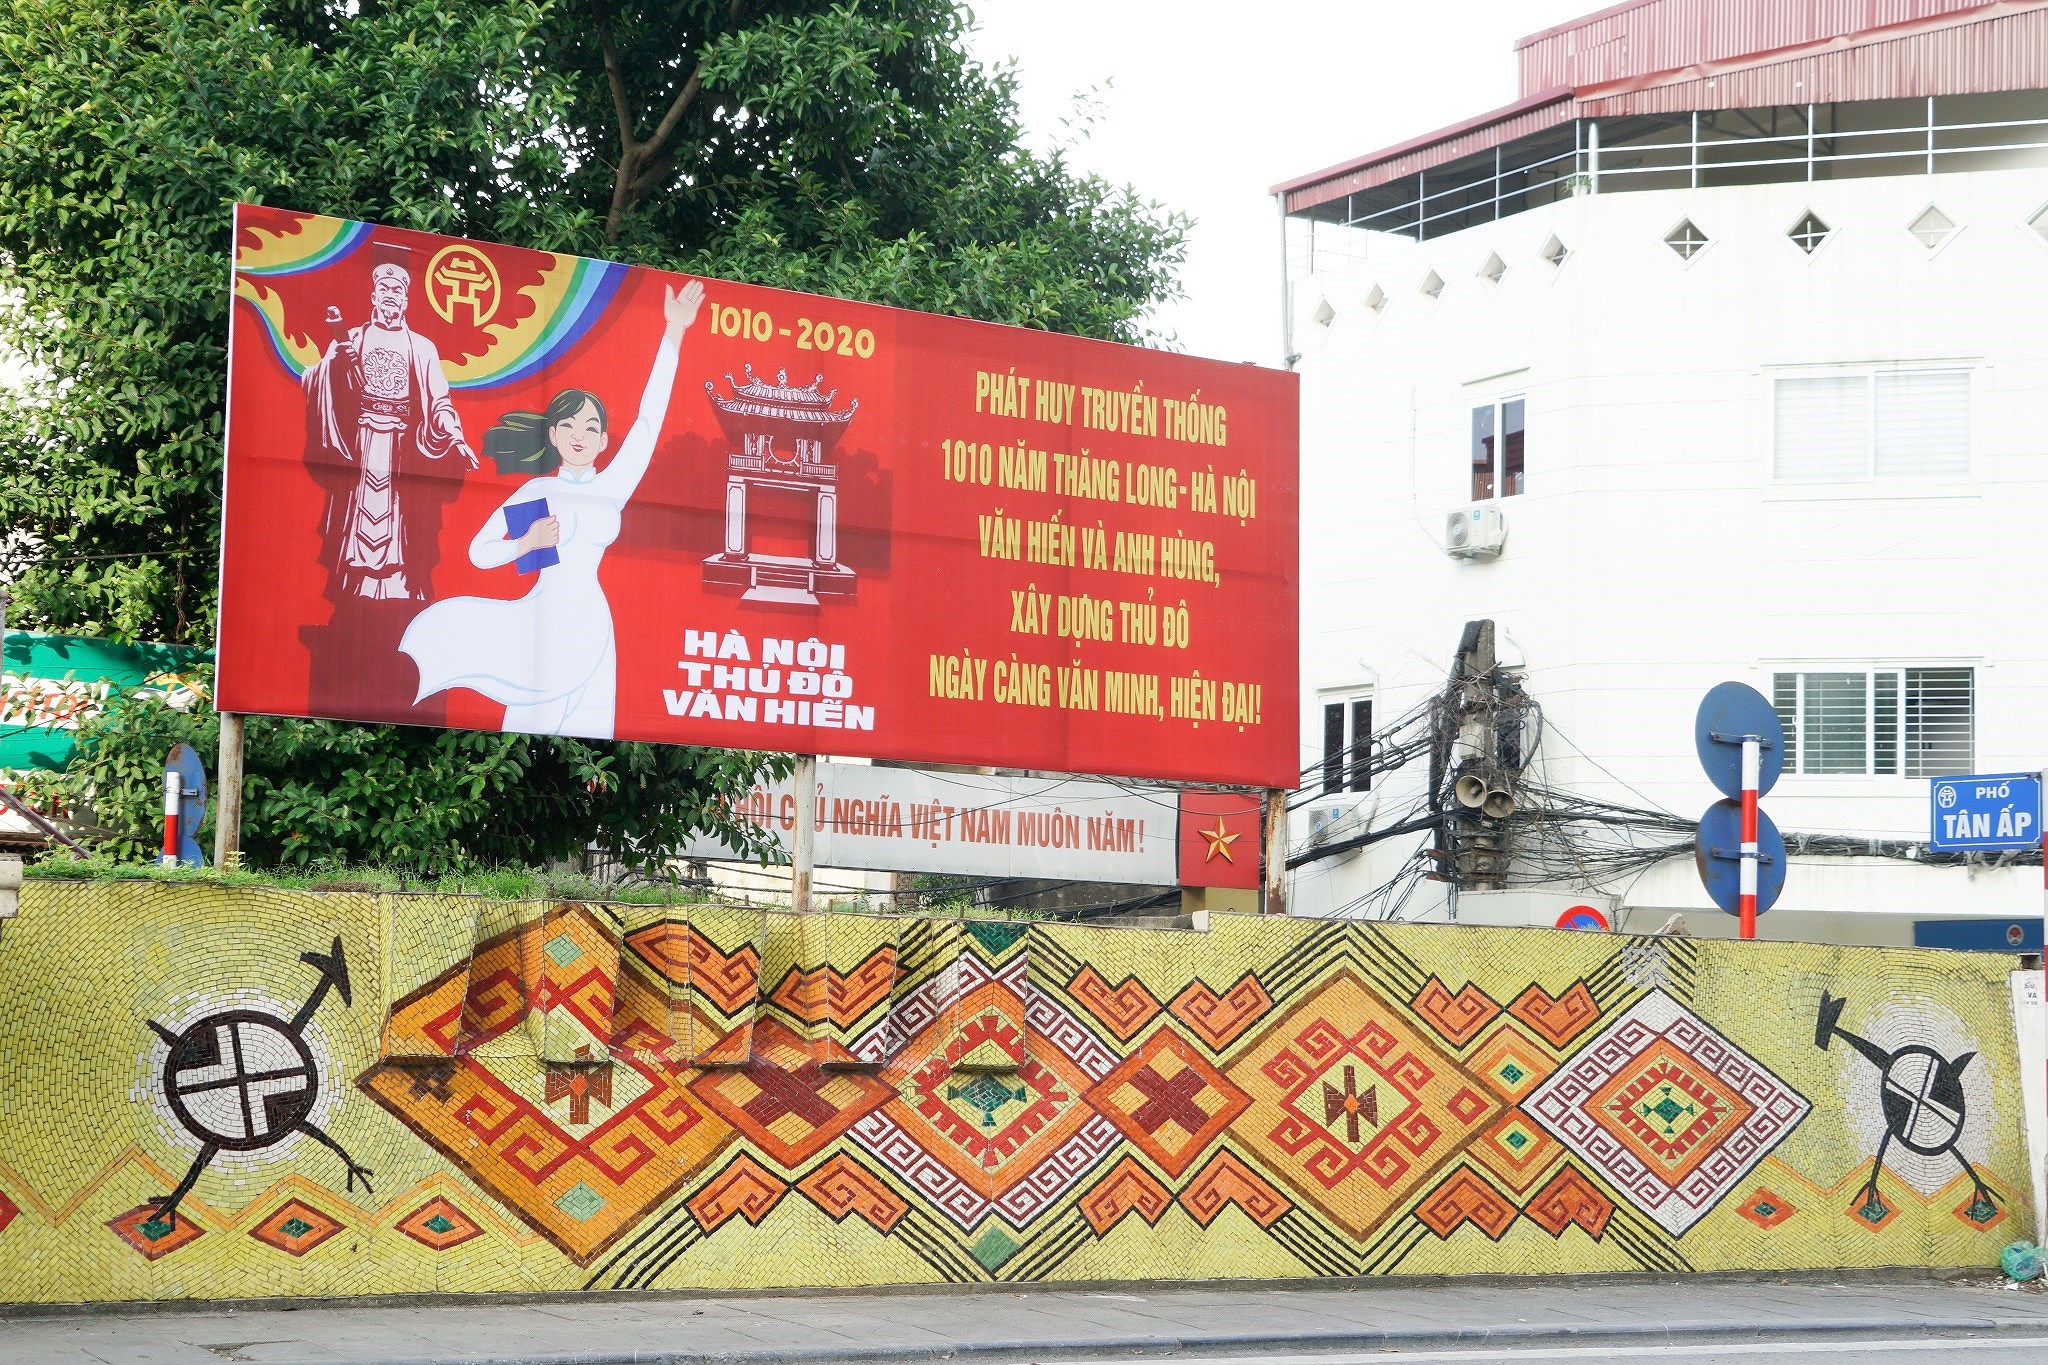 Les travaux de construction emblematiques marquant le Millenaire de Thang Long - Hanoi hinh anh 2